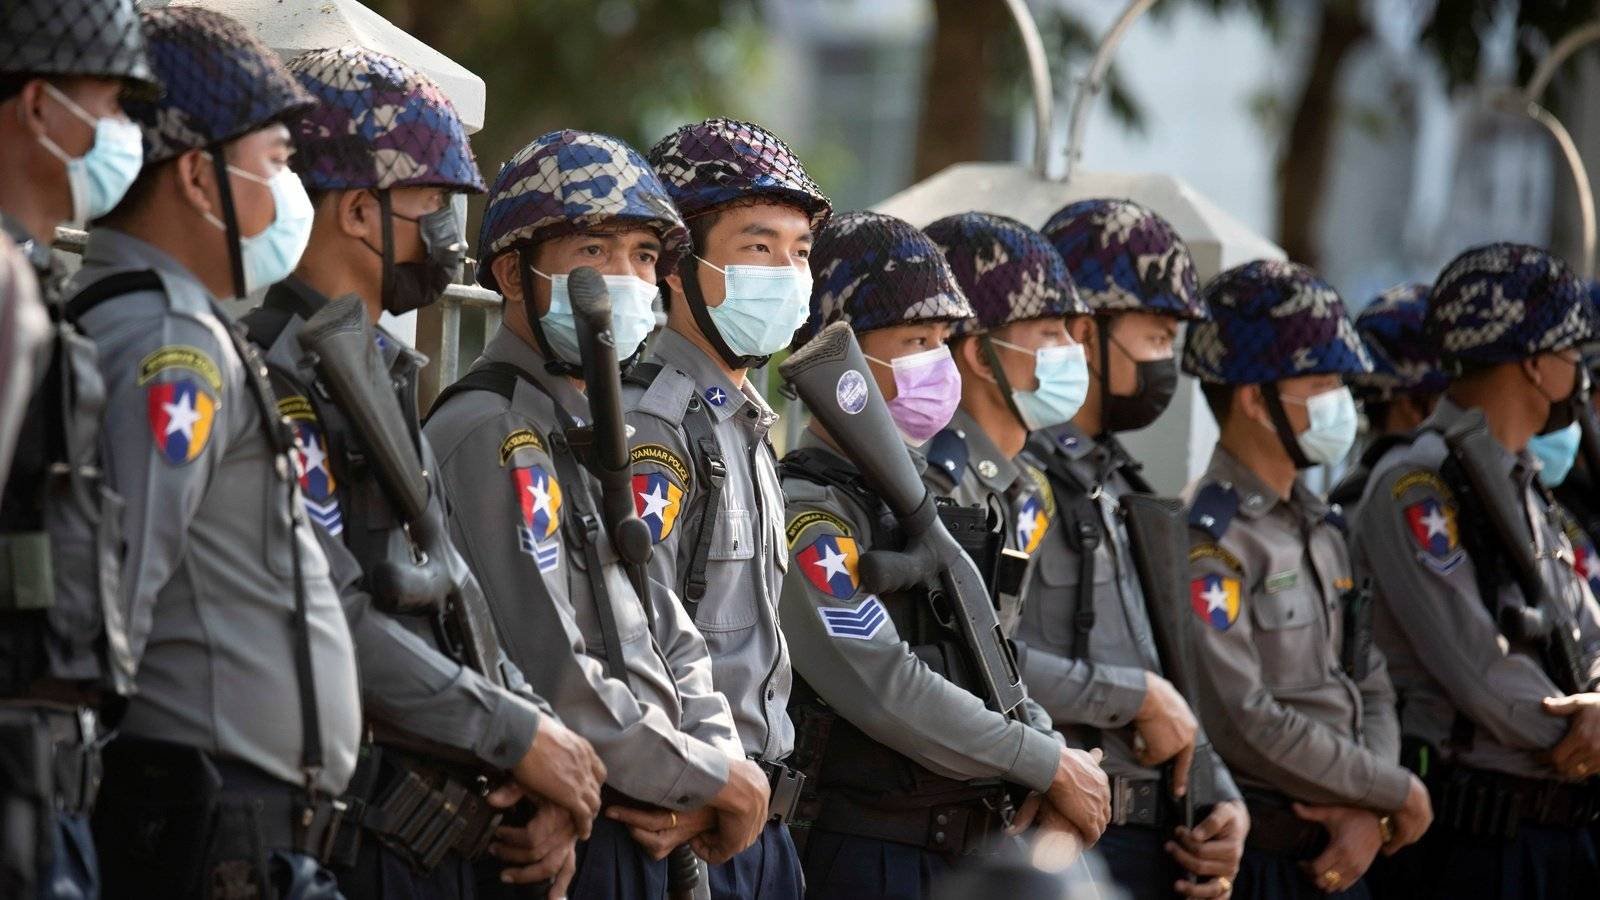 缅甸警服图片图片